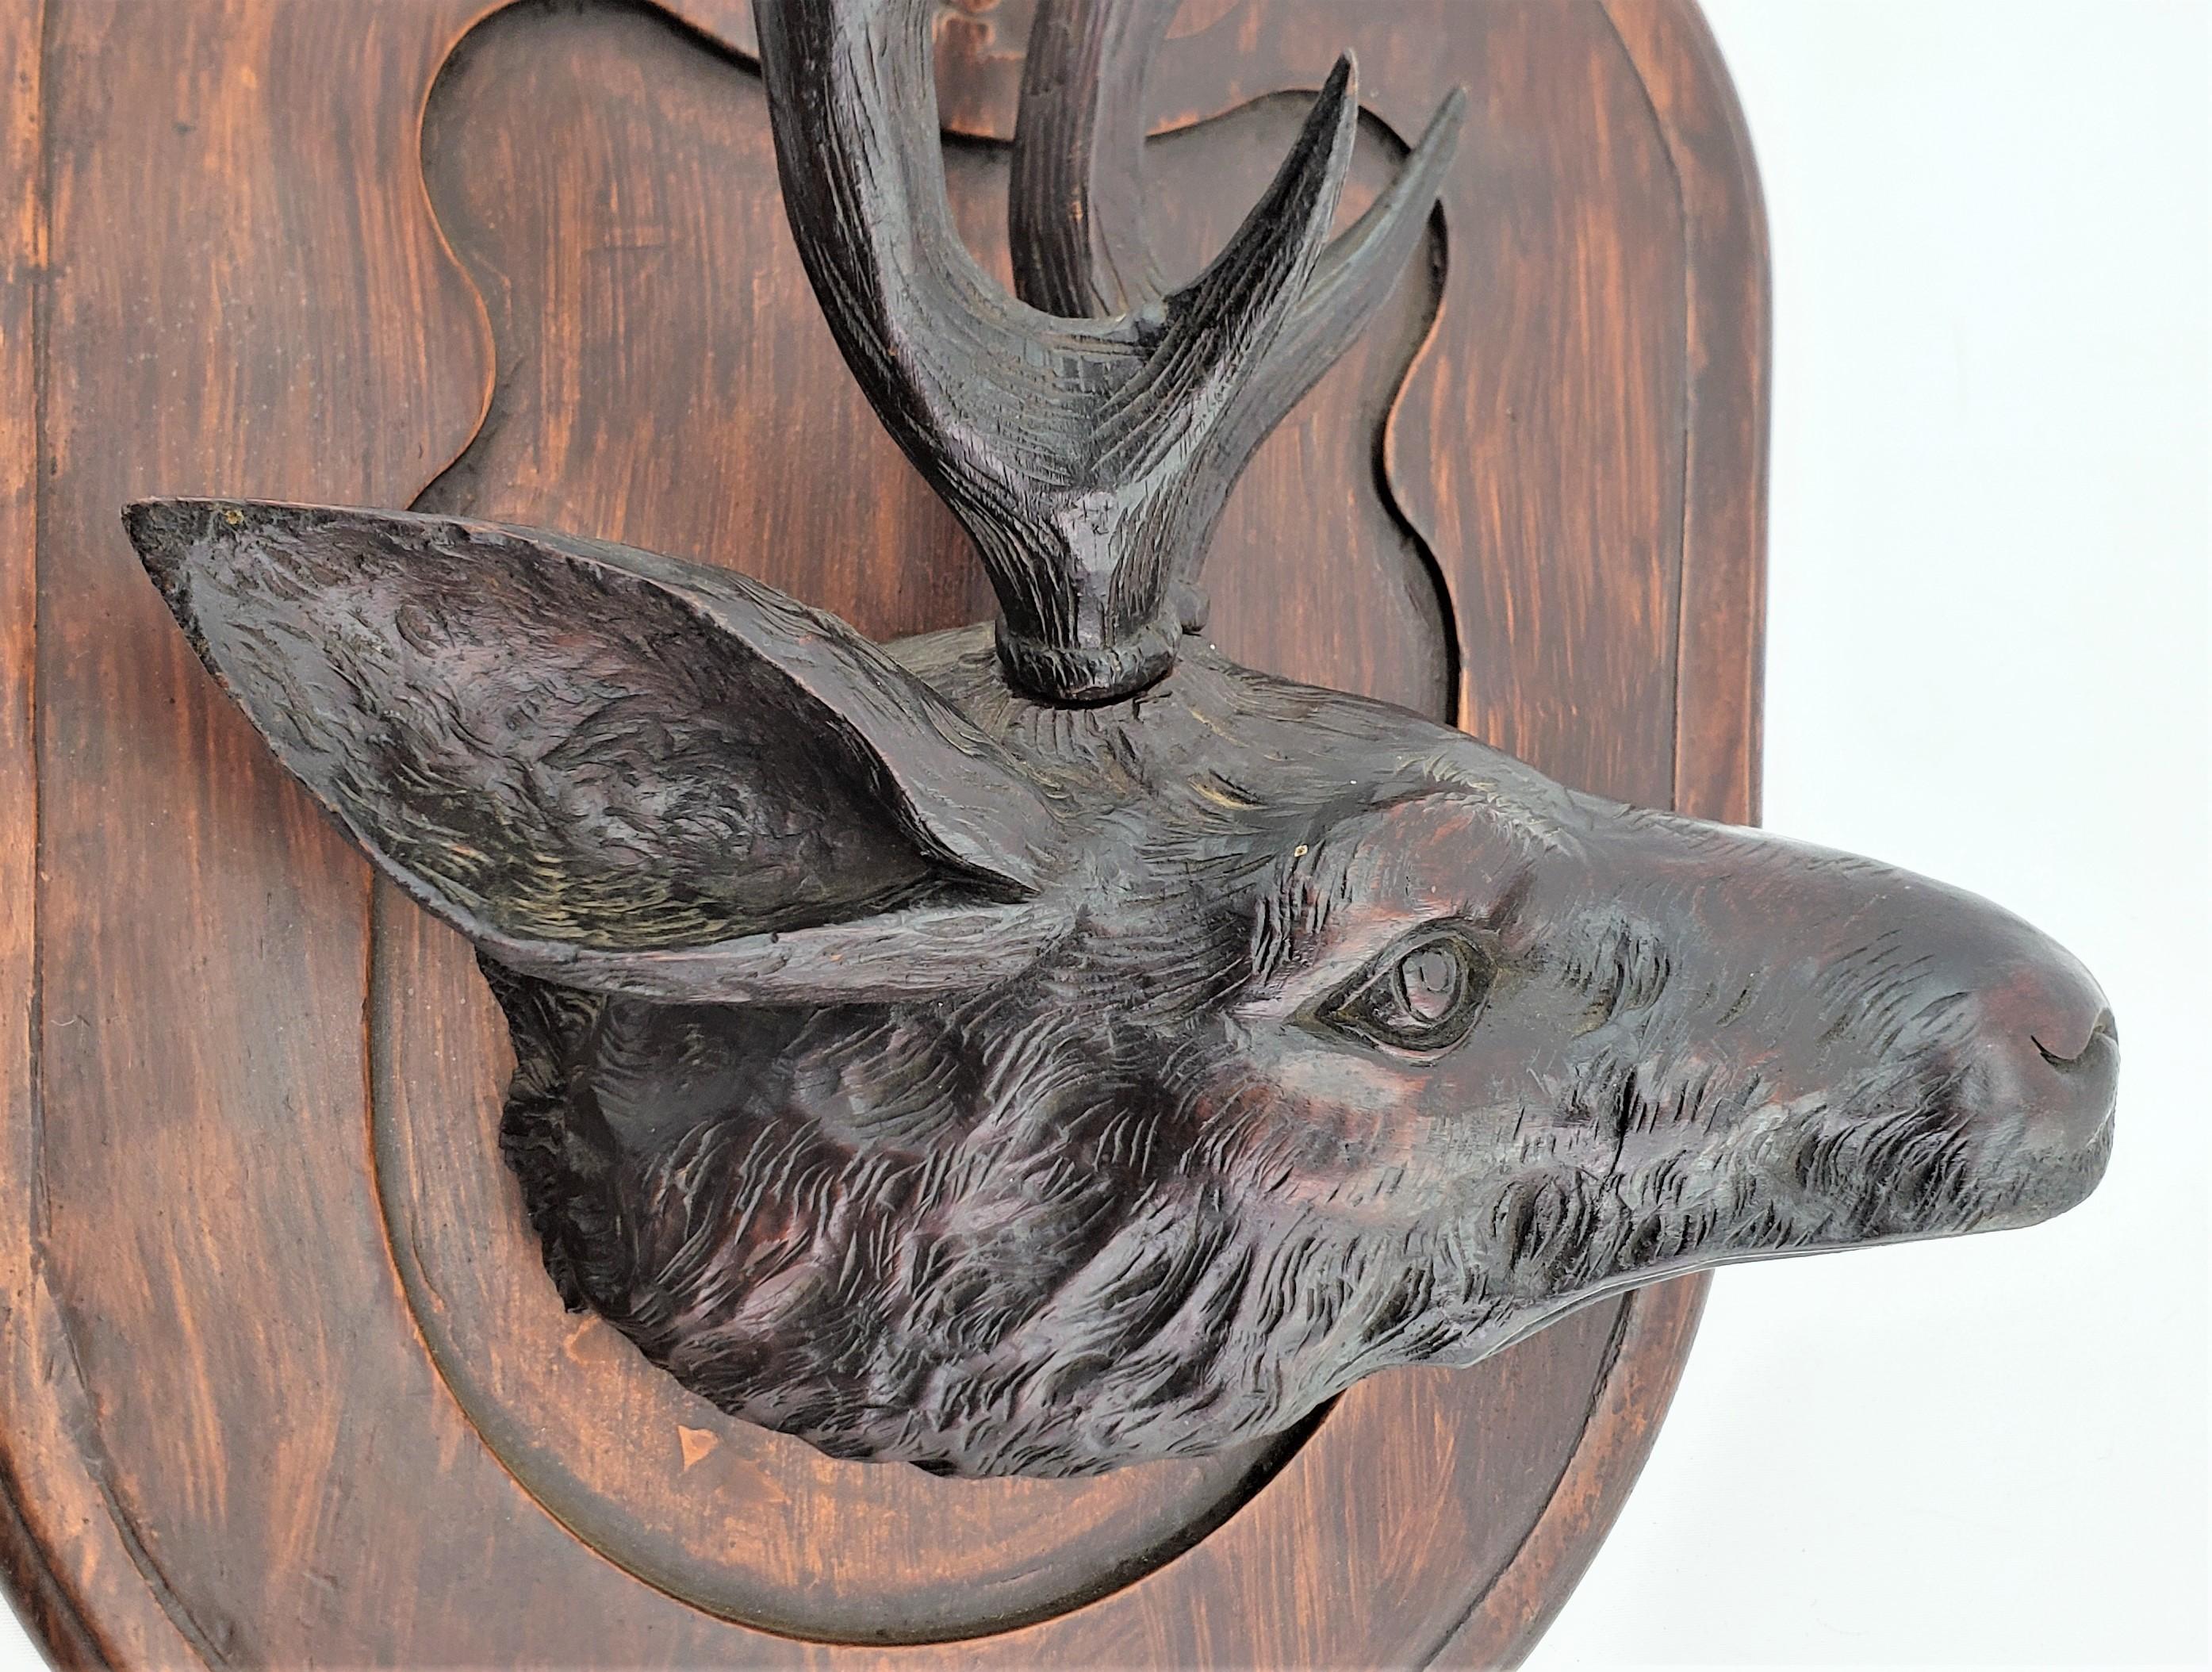 Antique Black Forest Hand-Carved Deer or Elk Head Wall Plaque or Sculpture For Sale 3